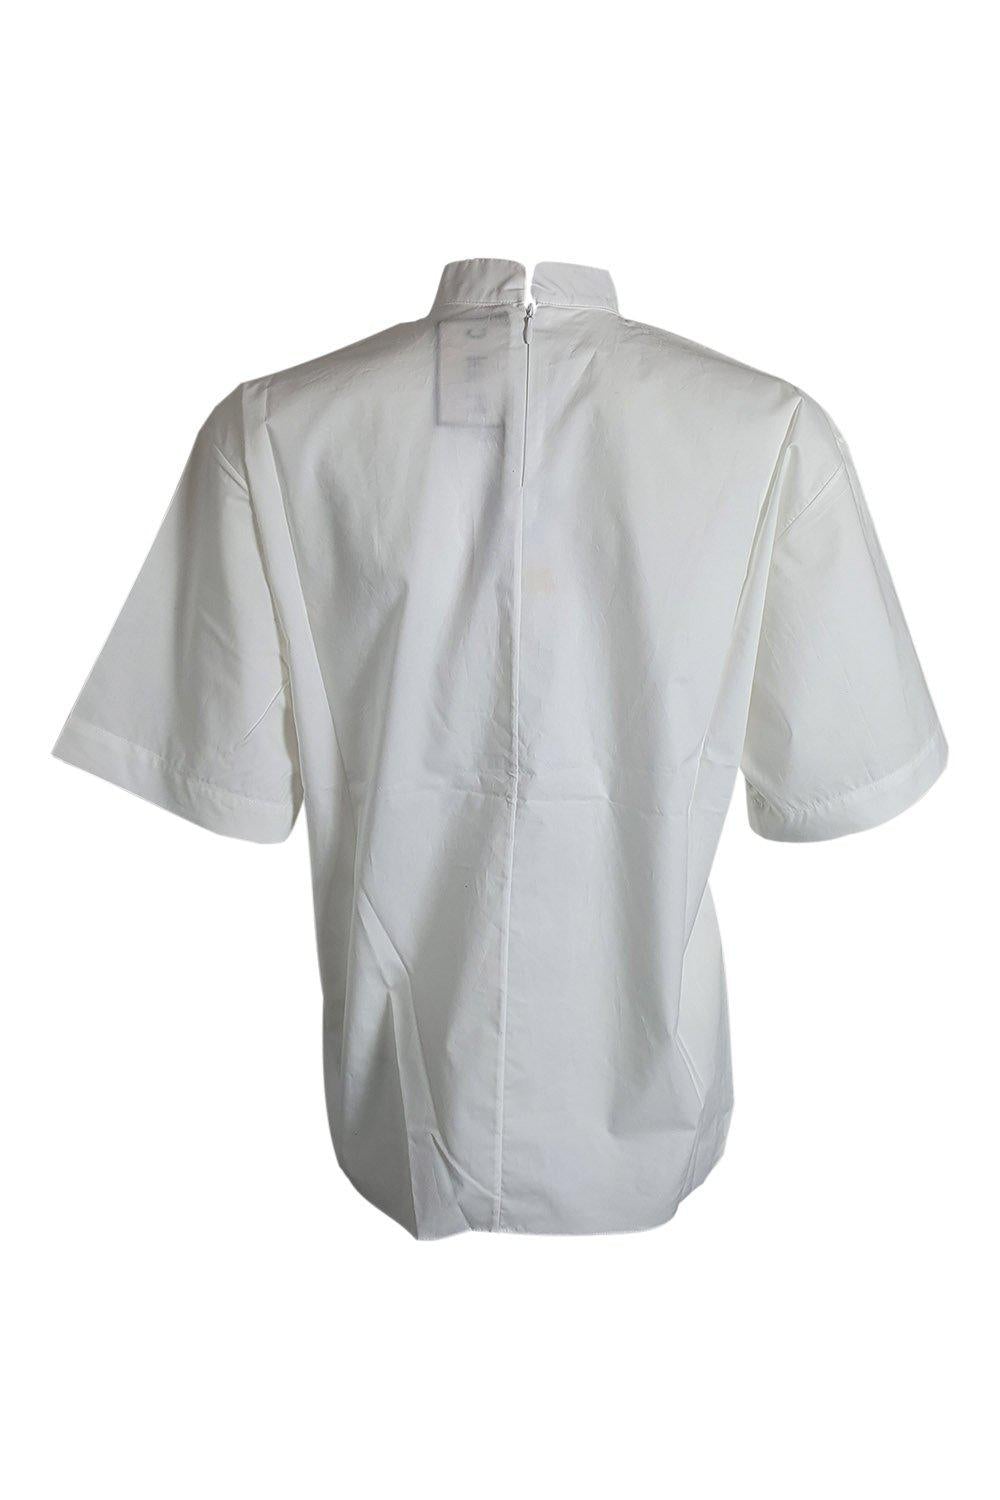 PLAN C White Poplin Crew Neck Short Sleeved Shirt (IT 38)-PLAN C-The Freperie